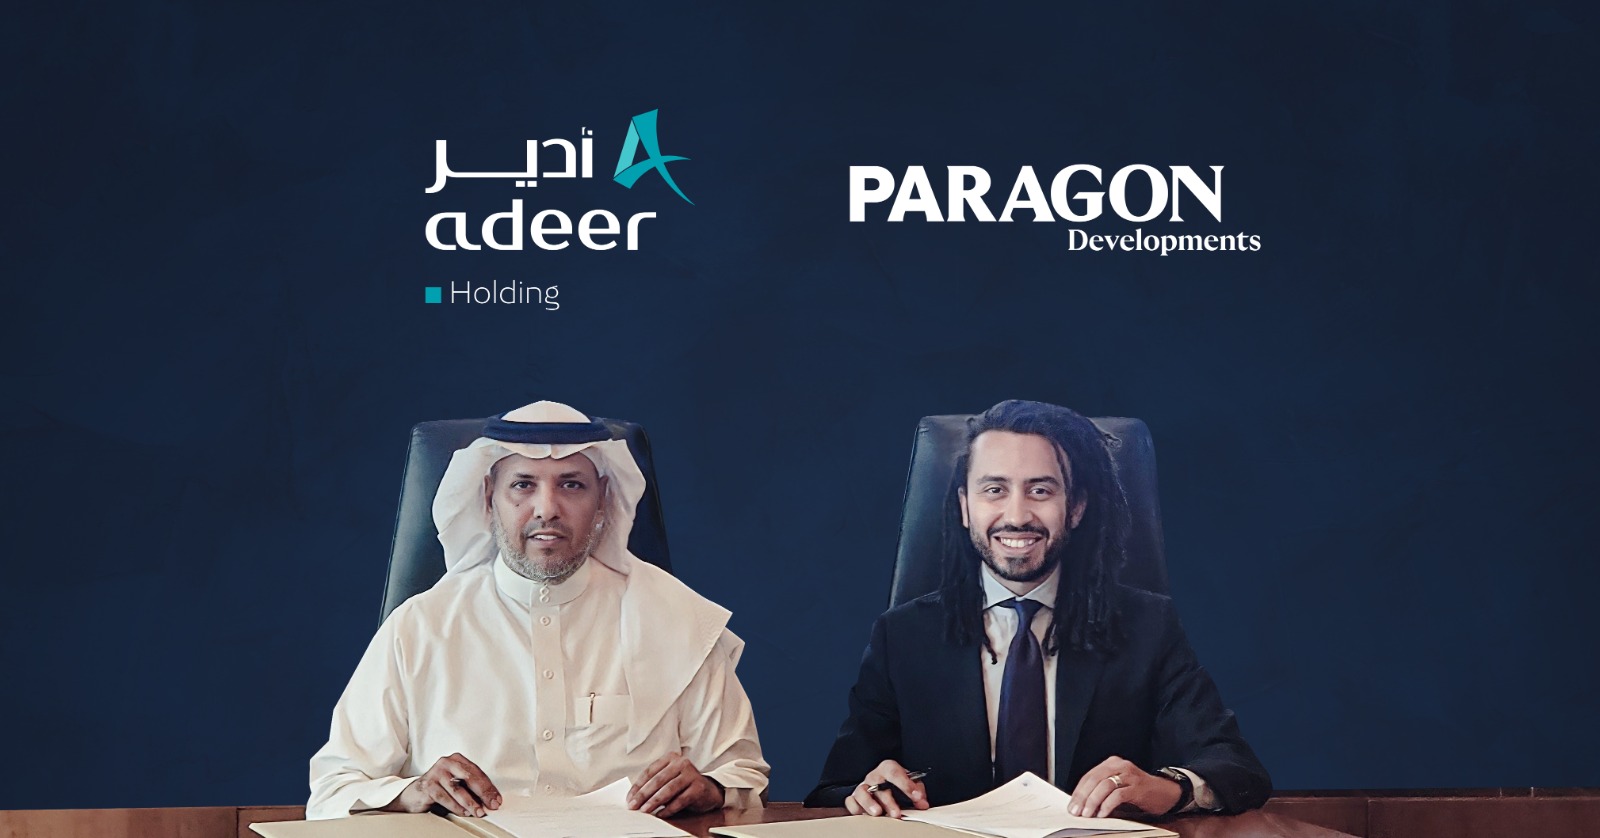 «باراجون» توقع اتفاقية مع «ادير» القابضة لبدء إدارة وتطوير المشروعات الإدارية بالمملكة السعودية